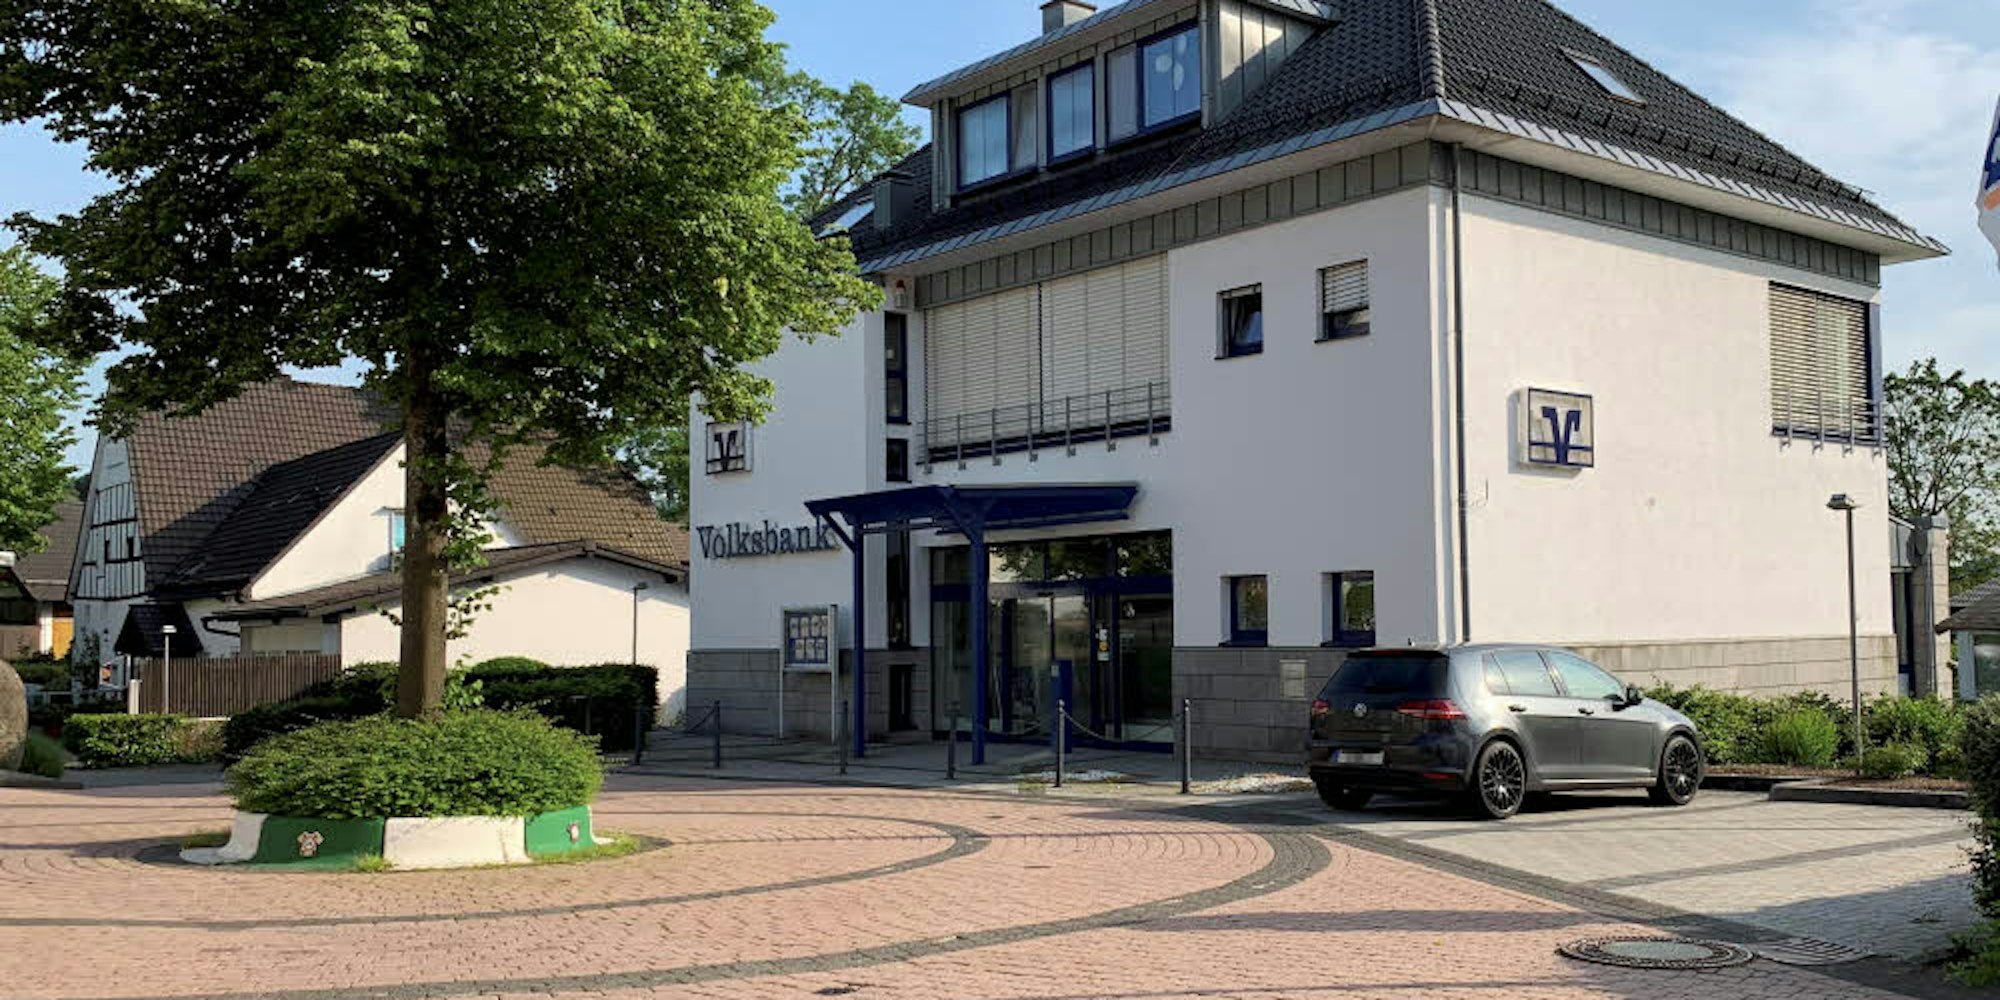 Seit 1905 gibt es in Müllenbach eine Genossenschaftsbank. Im Jubiläumsjahr 2005 war das 1997 errichtete Haus noch mit fünf Mitarbeitern besetzt. Das digitale Bankgeschäft hat die Besucherzahl in den vergangenen Jahren stetig sinken lassen.